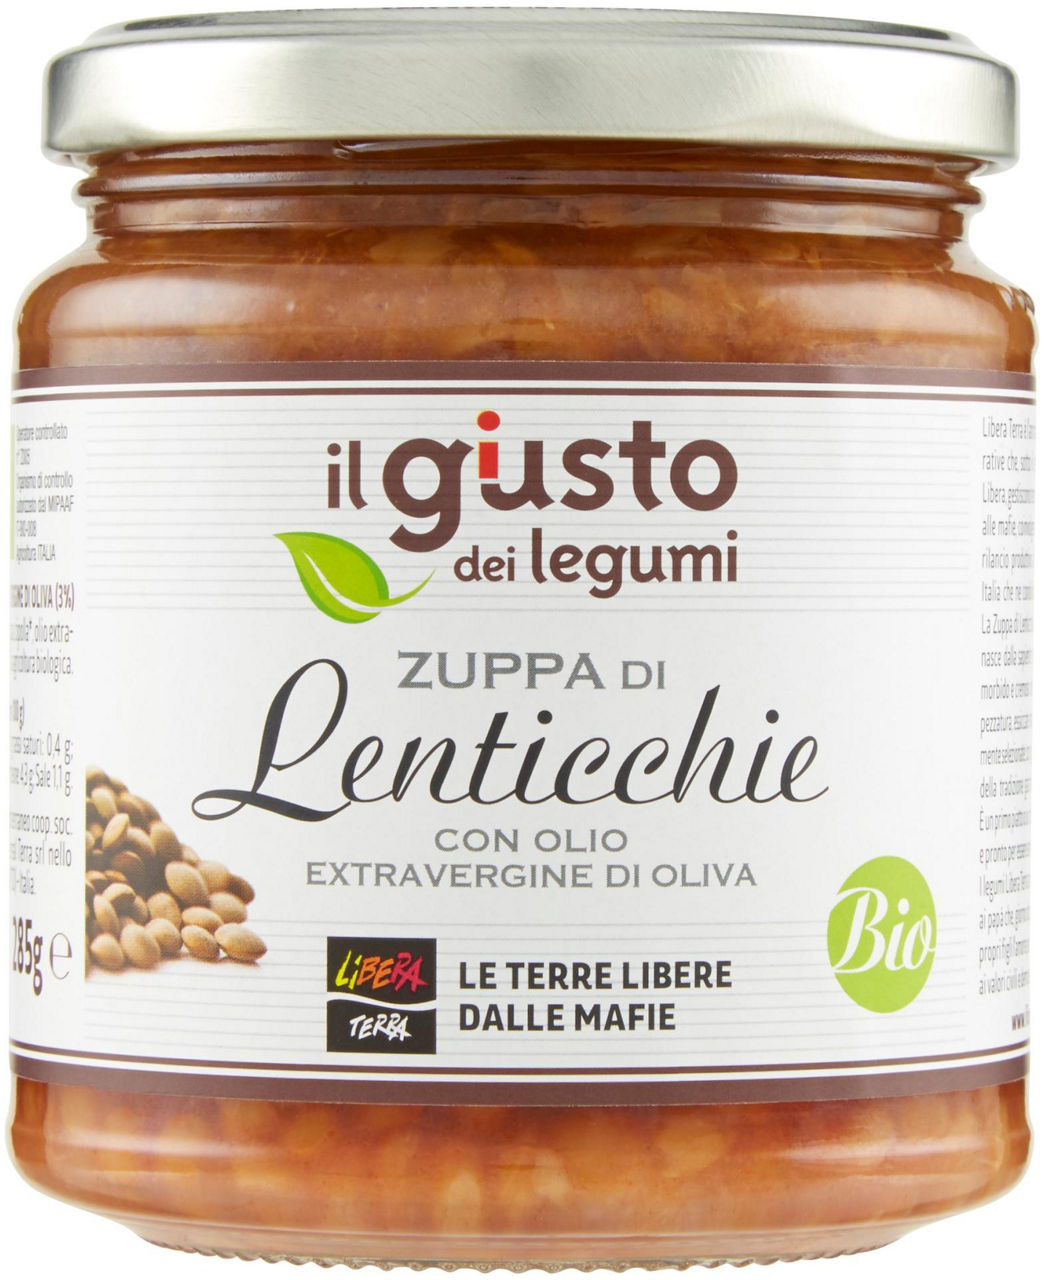 Zuppa di lenticchie biologica con olio extra vergine di oliva gr 285 - 0